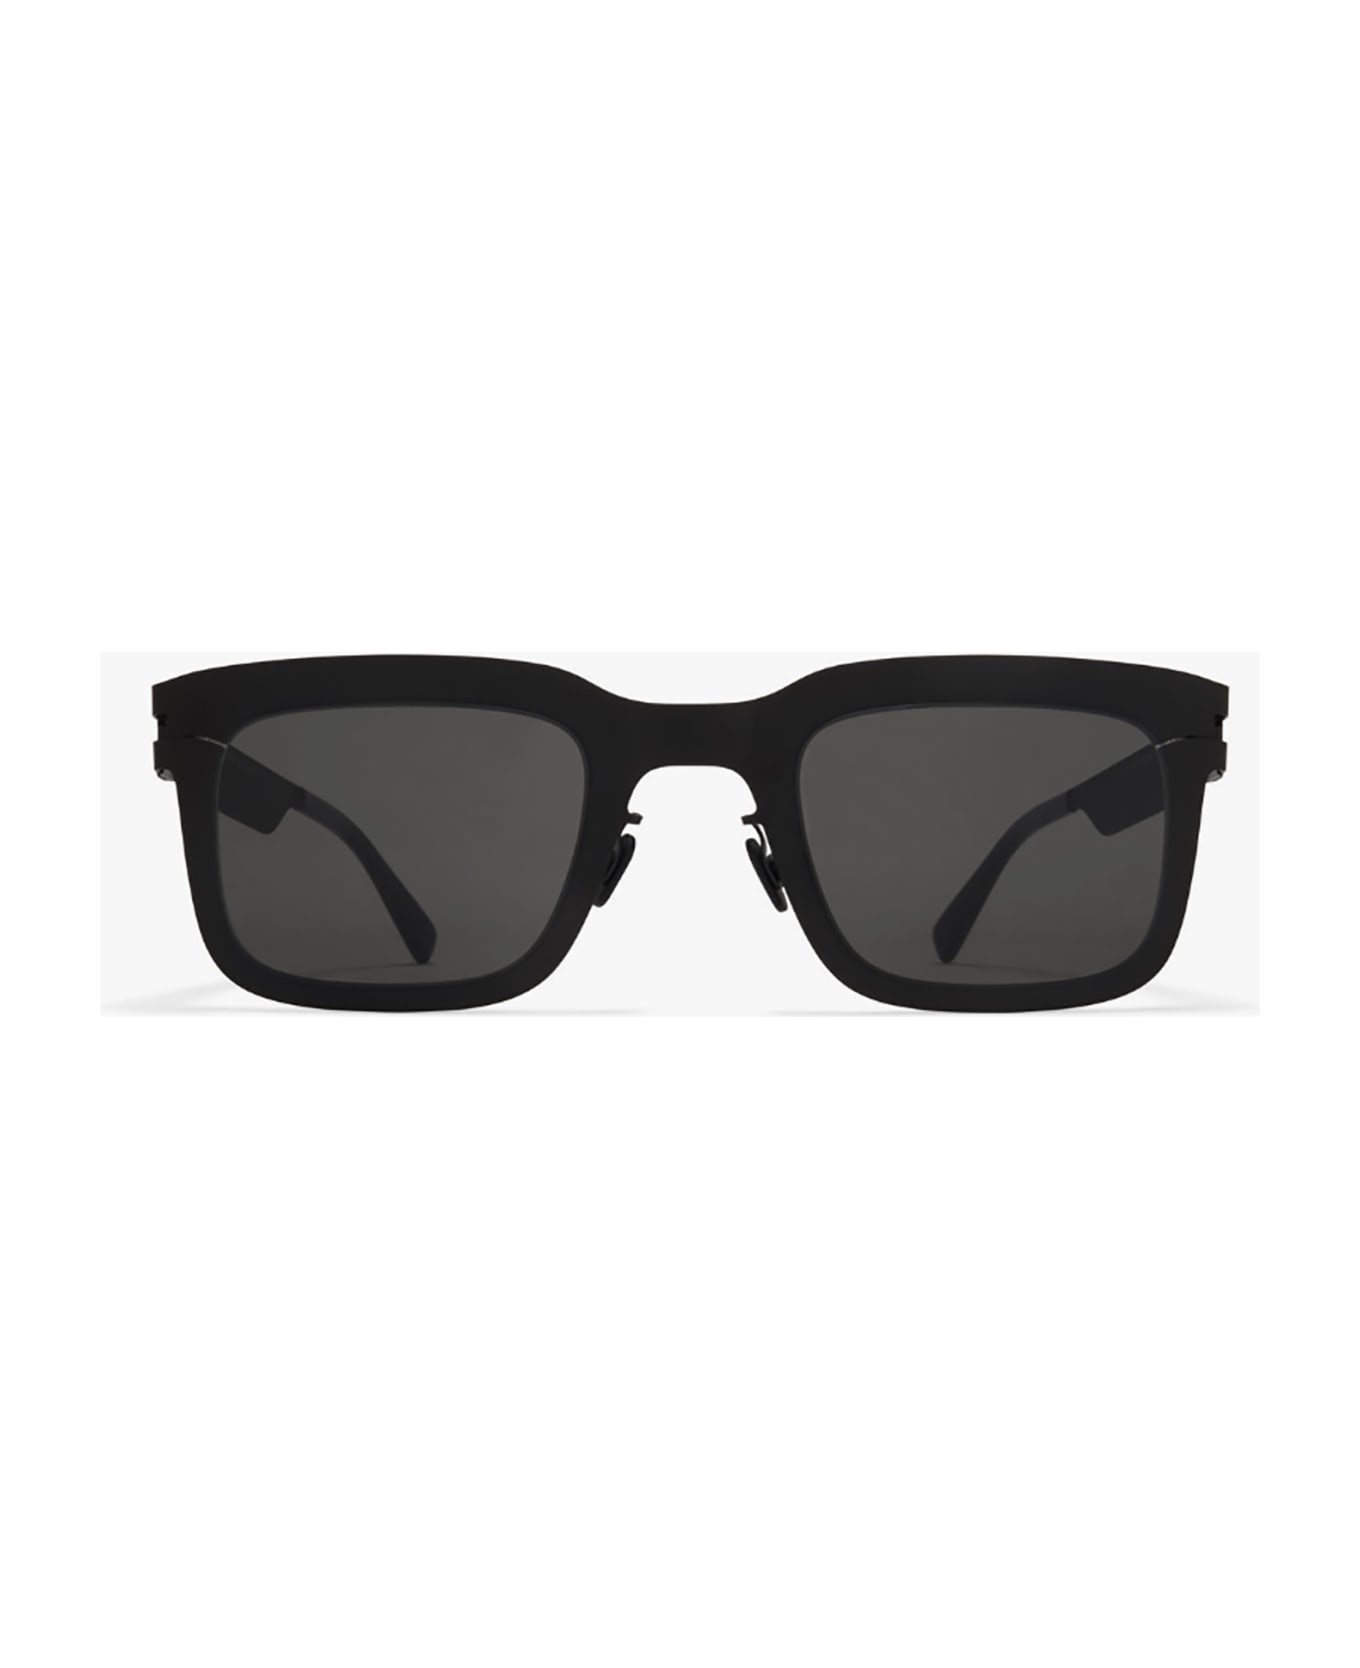 Mykita NORFOLK Sunglasses - Black Darkgrey サングラス